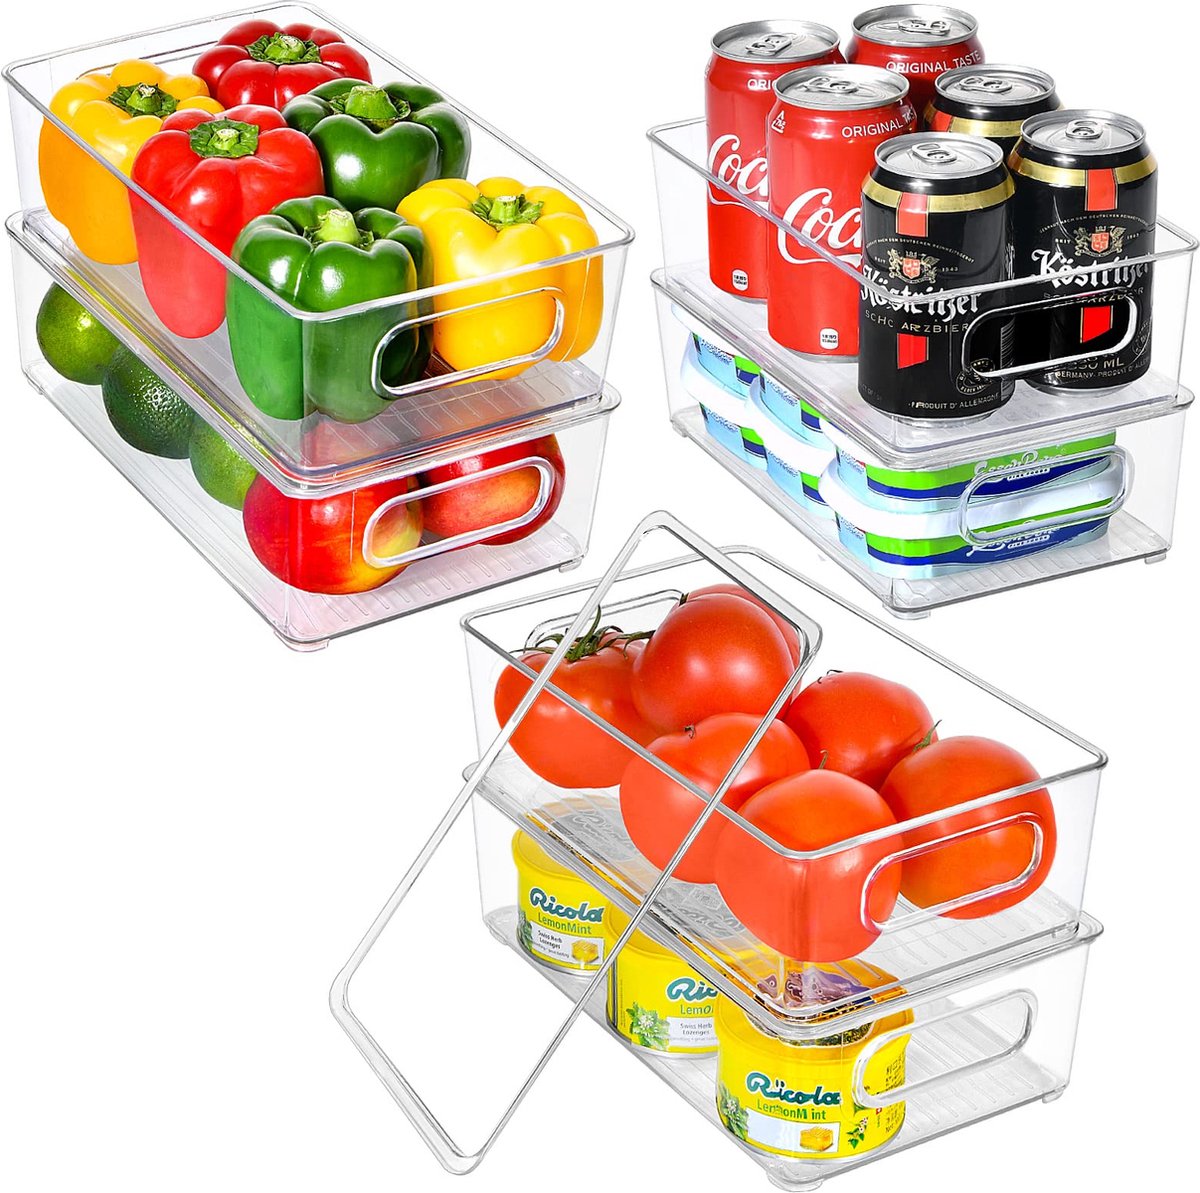 GoMaihe Koelkast Organizer Set 6 PCS - BPA Vrij Hoogwaardige transparante koelkast Organizer met deksel en lade Stapelbare koelkast opbergdoos - voor keukens, koelkasten, kasten